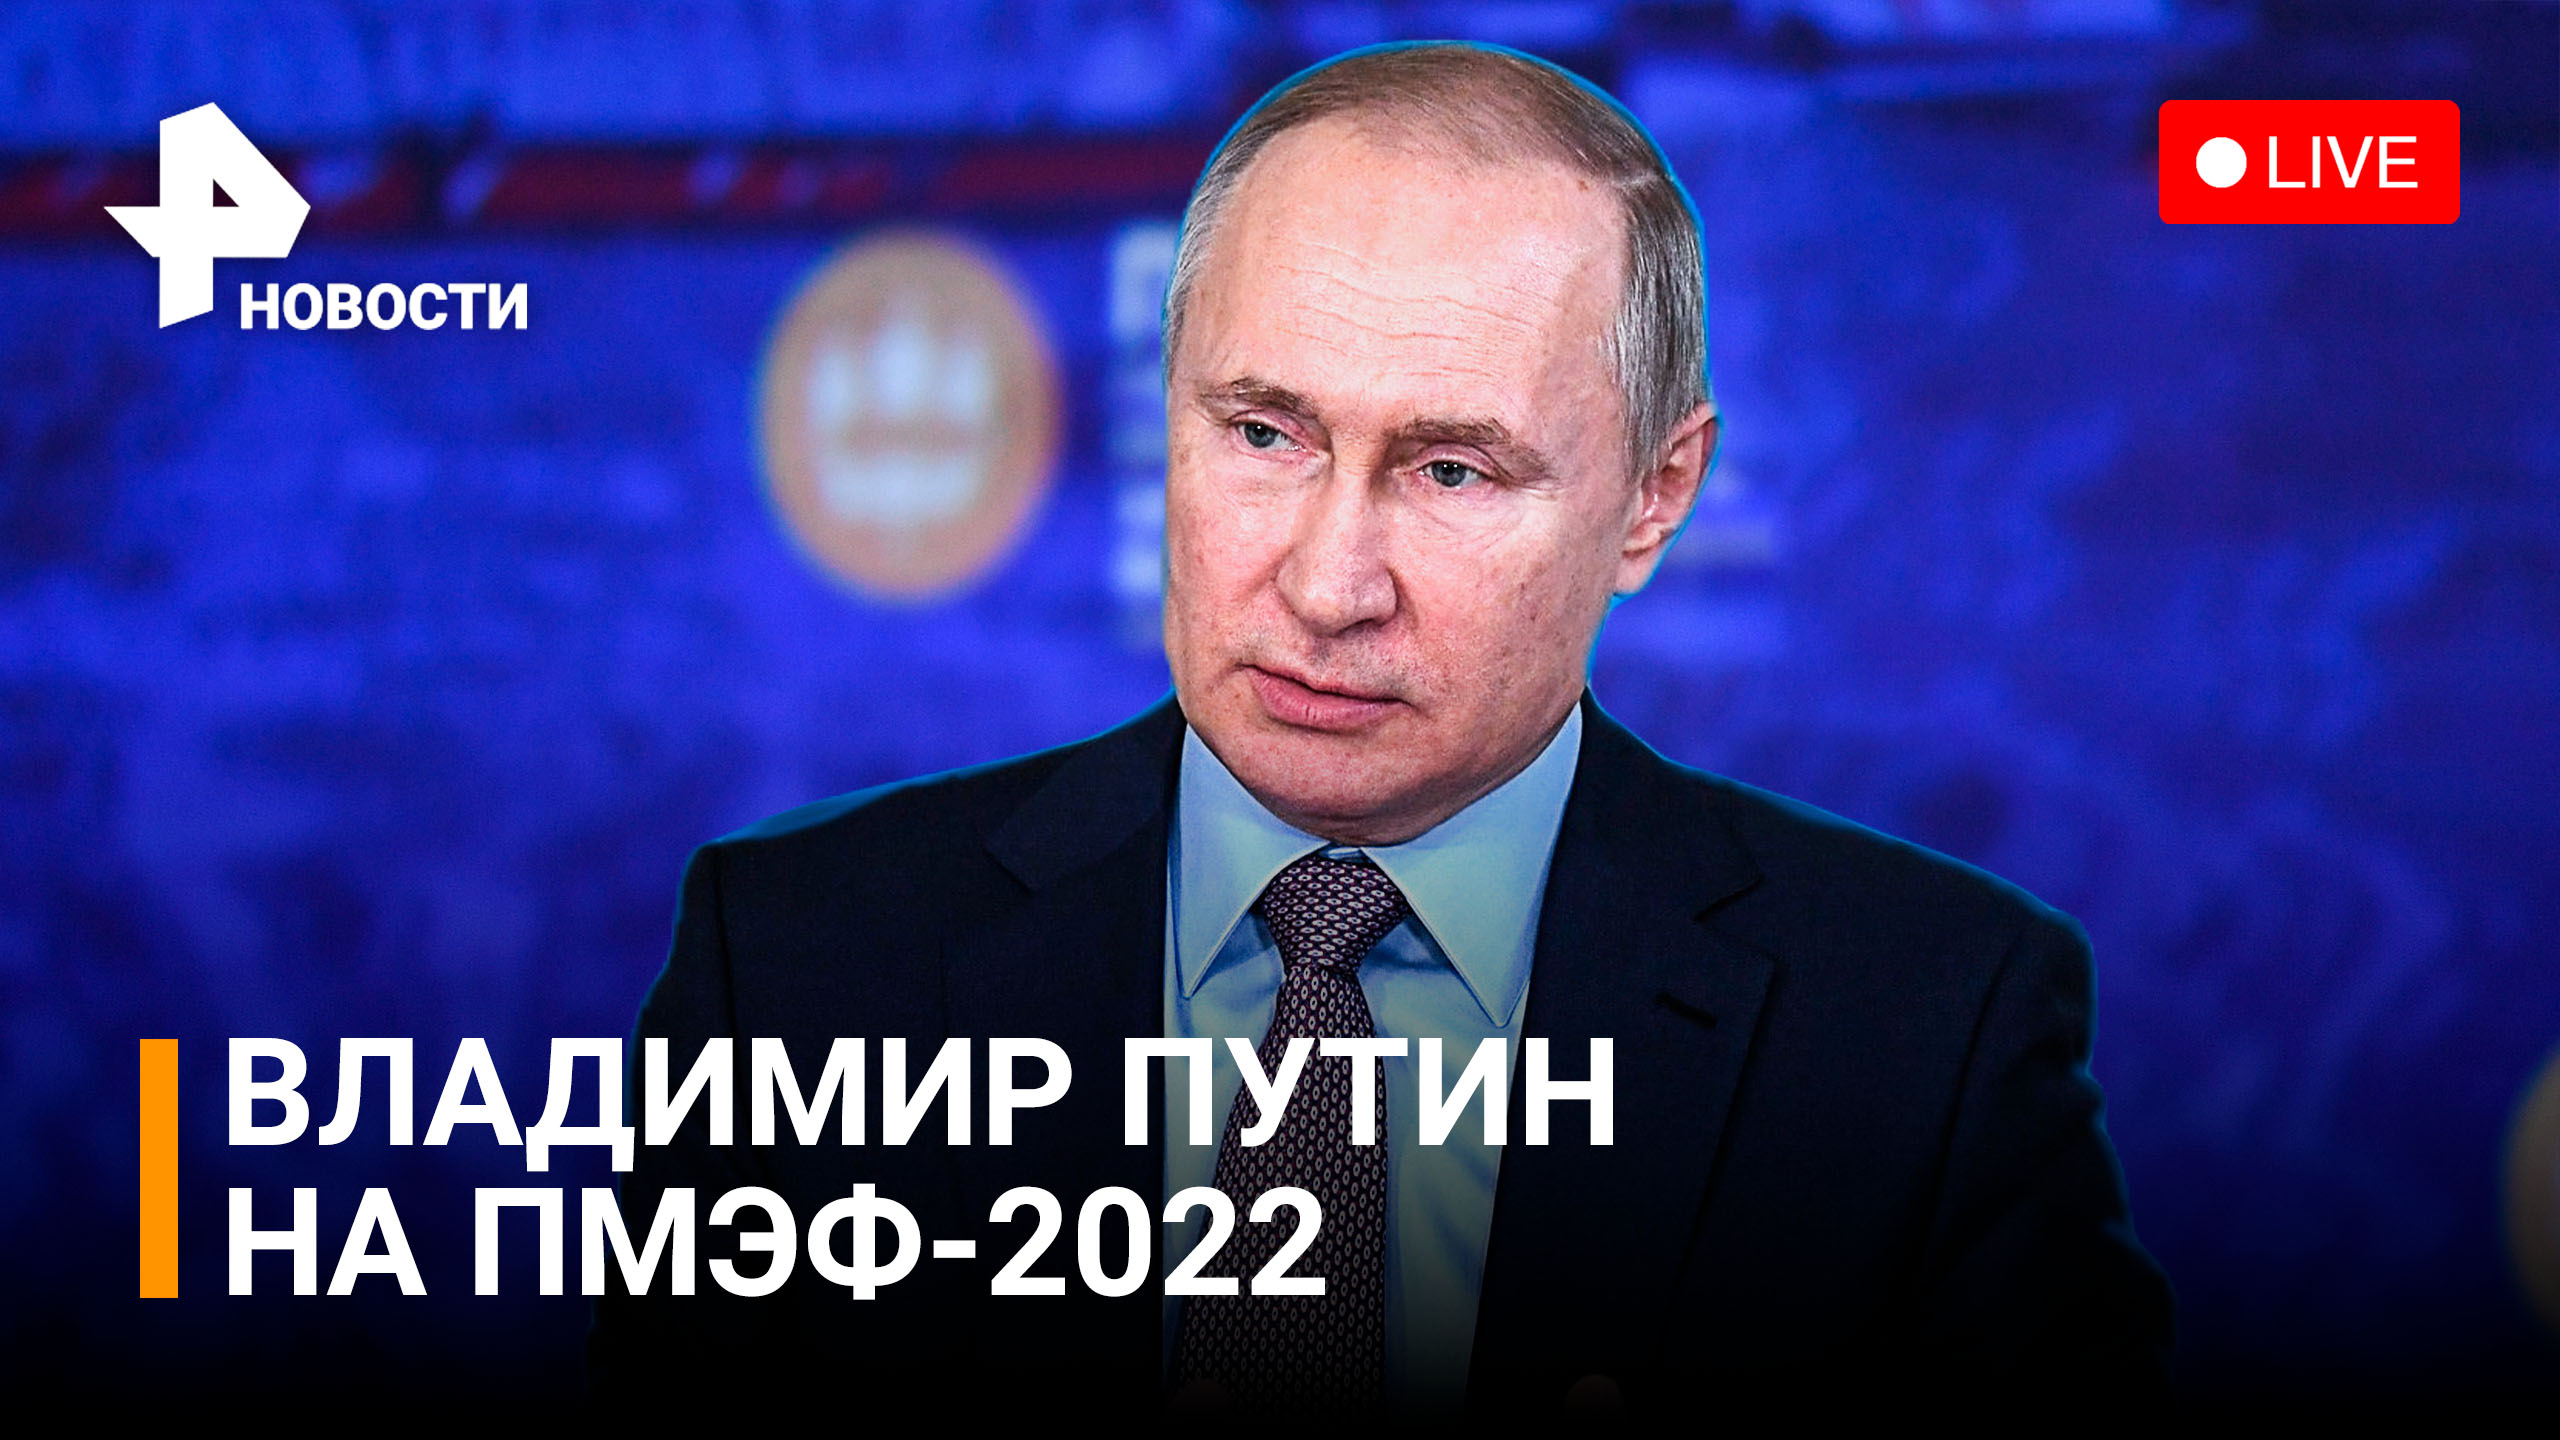 Владимир Путин на пленарной сессии ПМЭФ-2022. Прямая трансляция / РЕН Новости